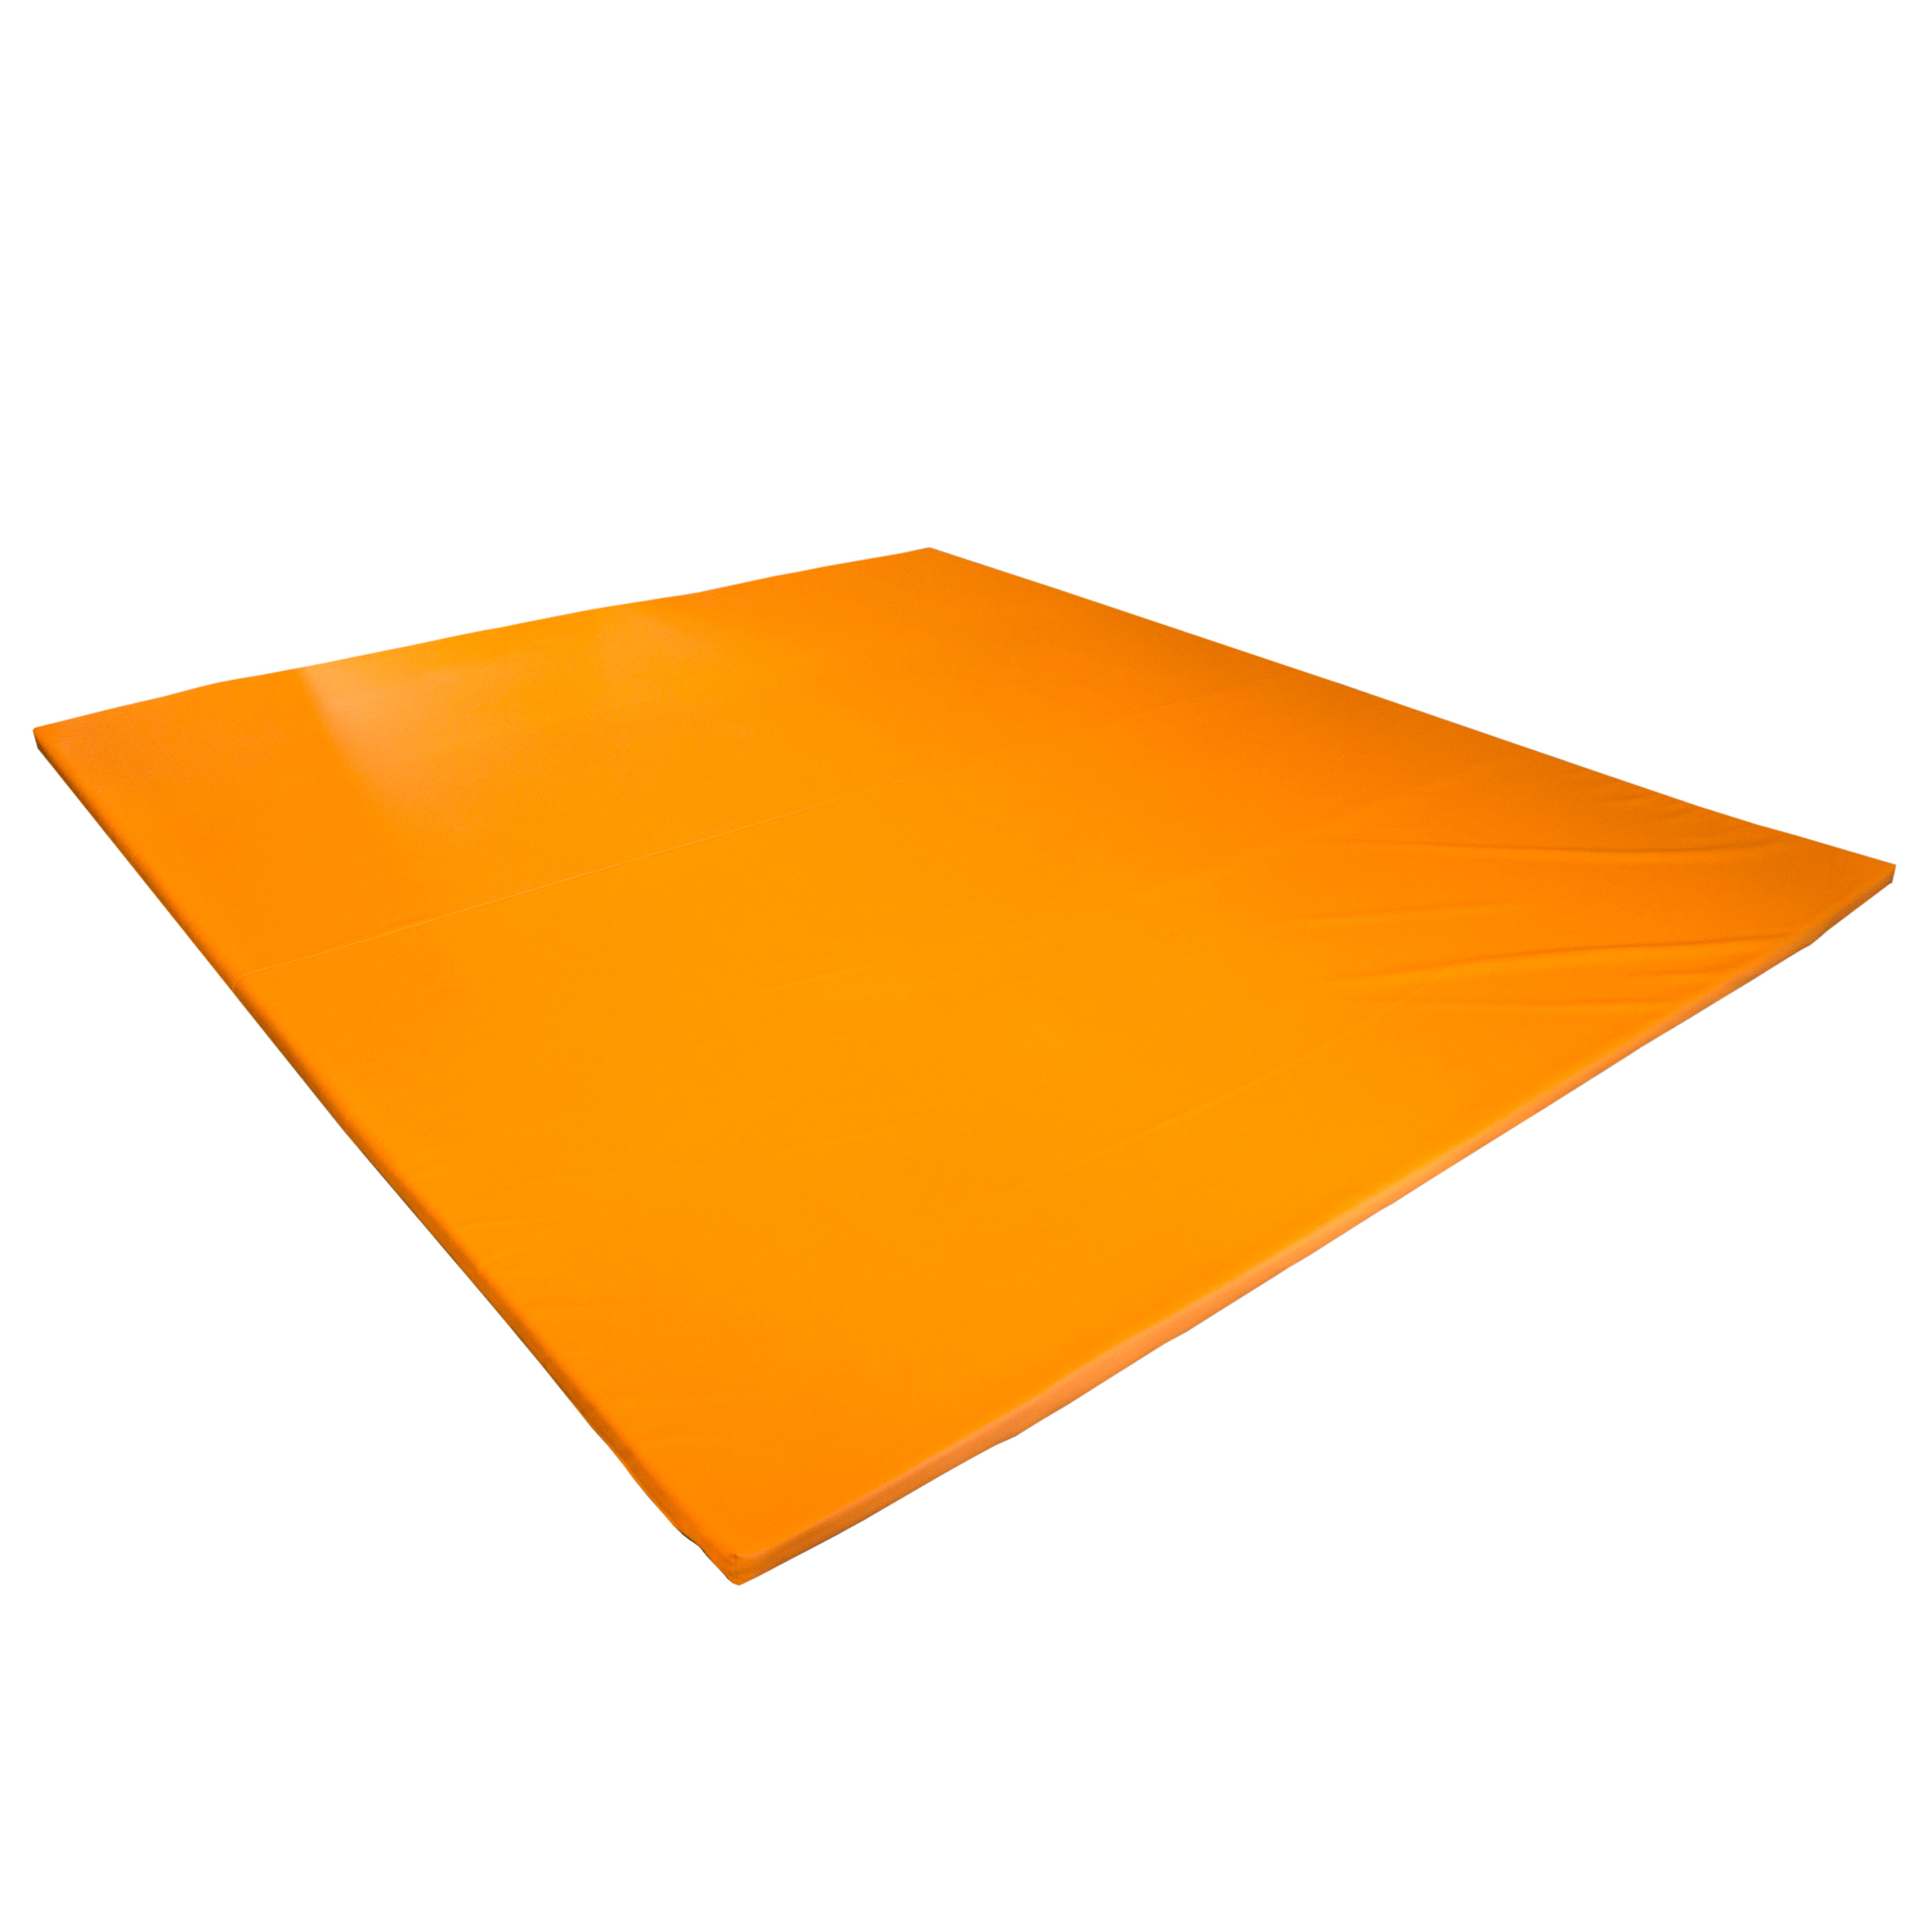 Erlebnismatte 'Meditap', 270 x 250 x 3 cm, orange